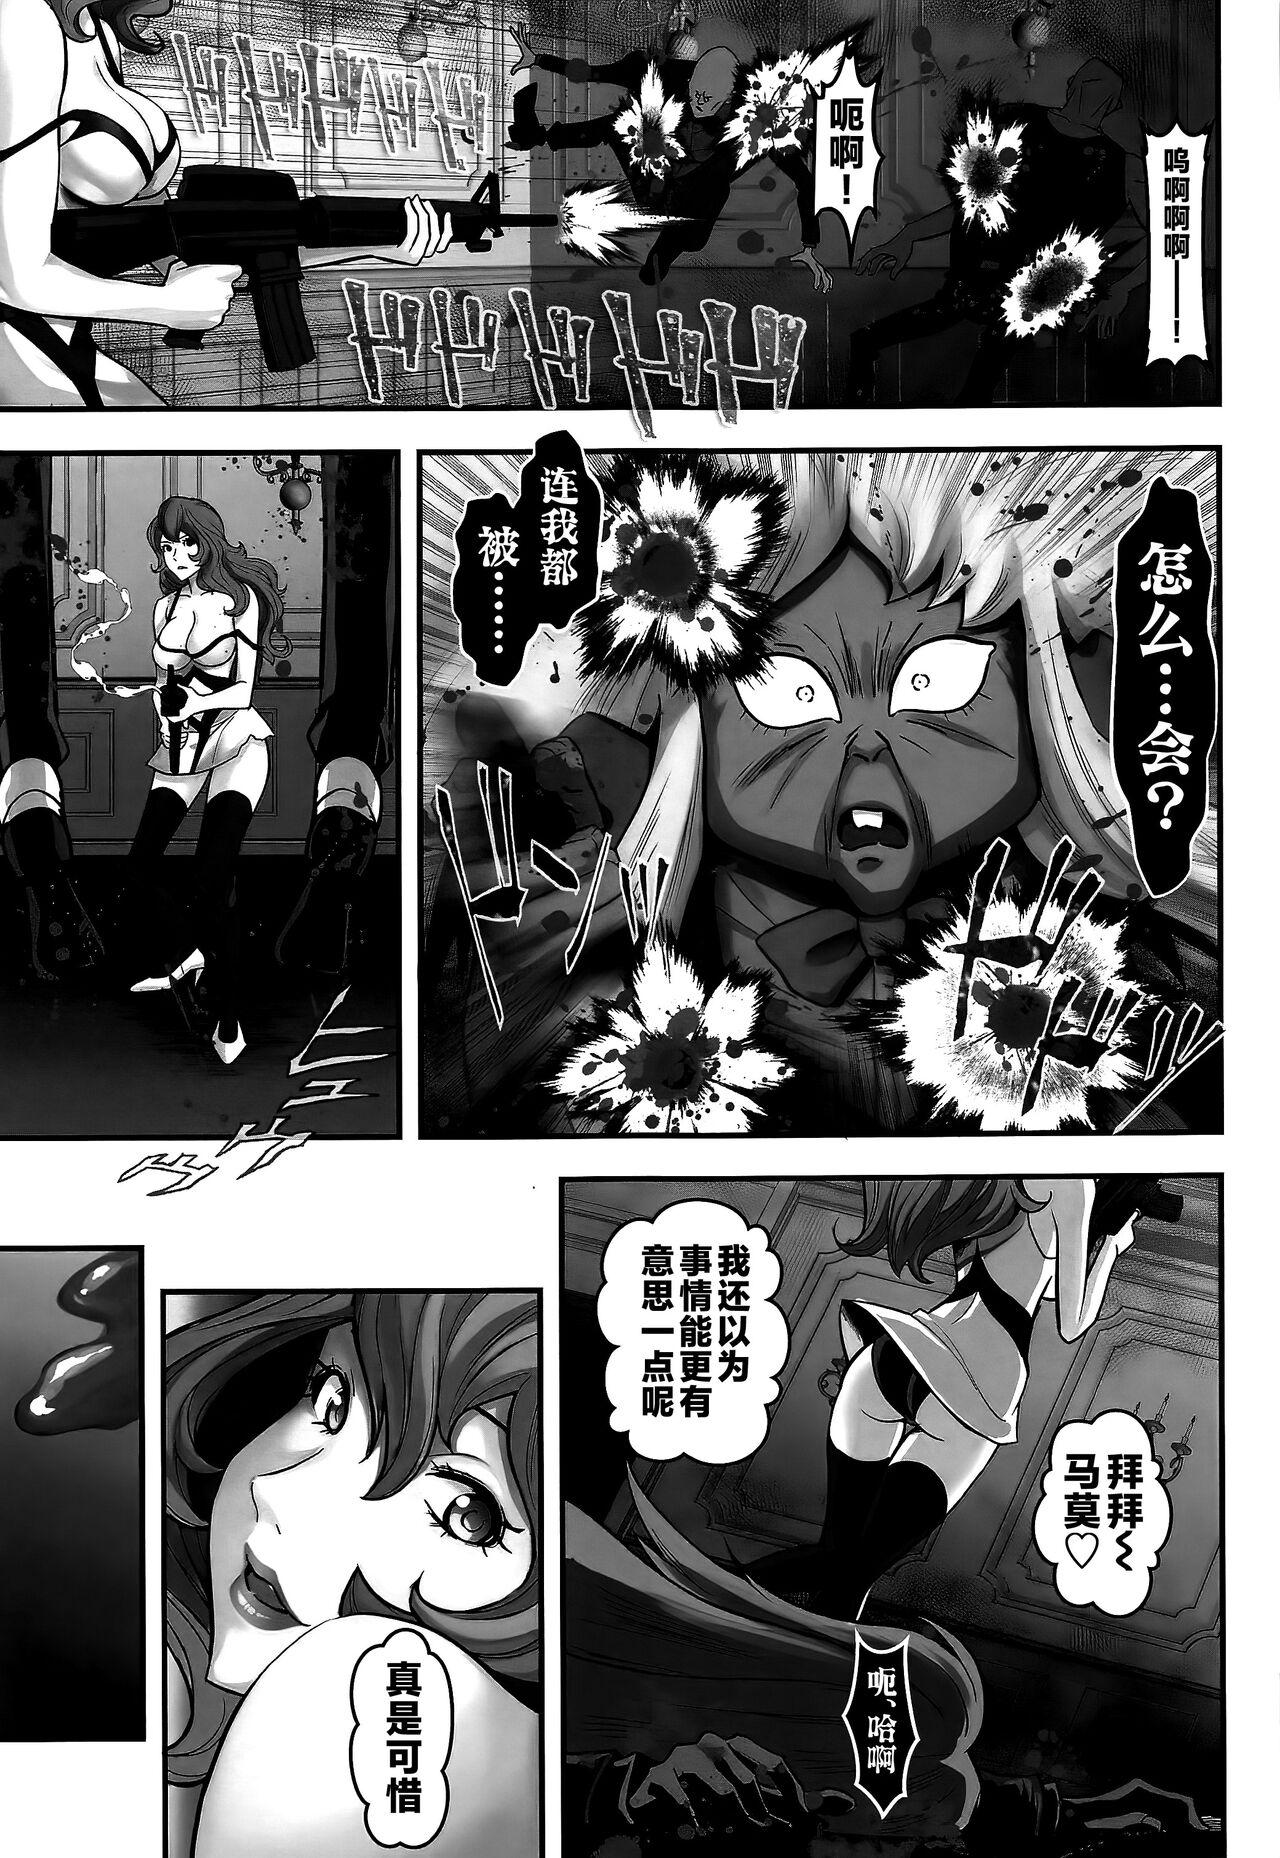 Duro Mamo no Fukushuu - REVENGE OF THE MAMO - Lupin iii Negra - Page 10